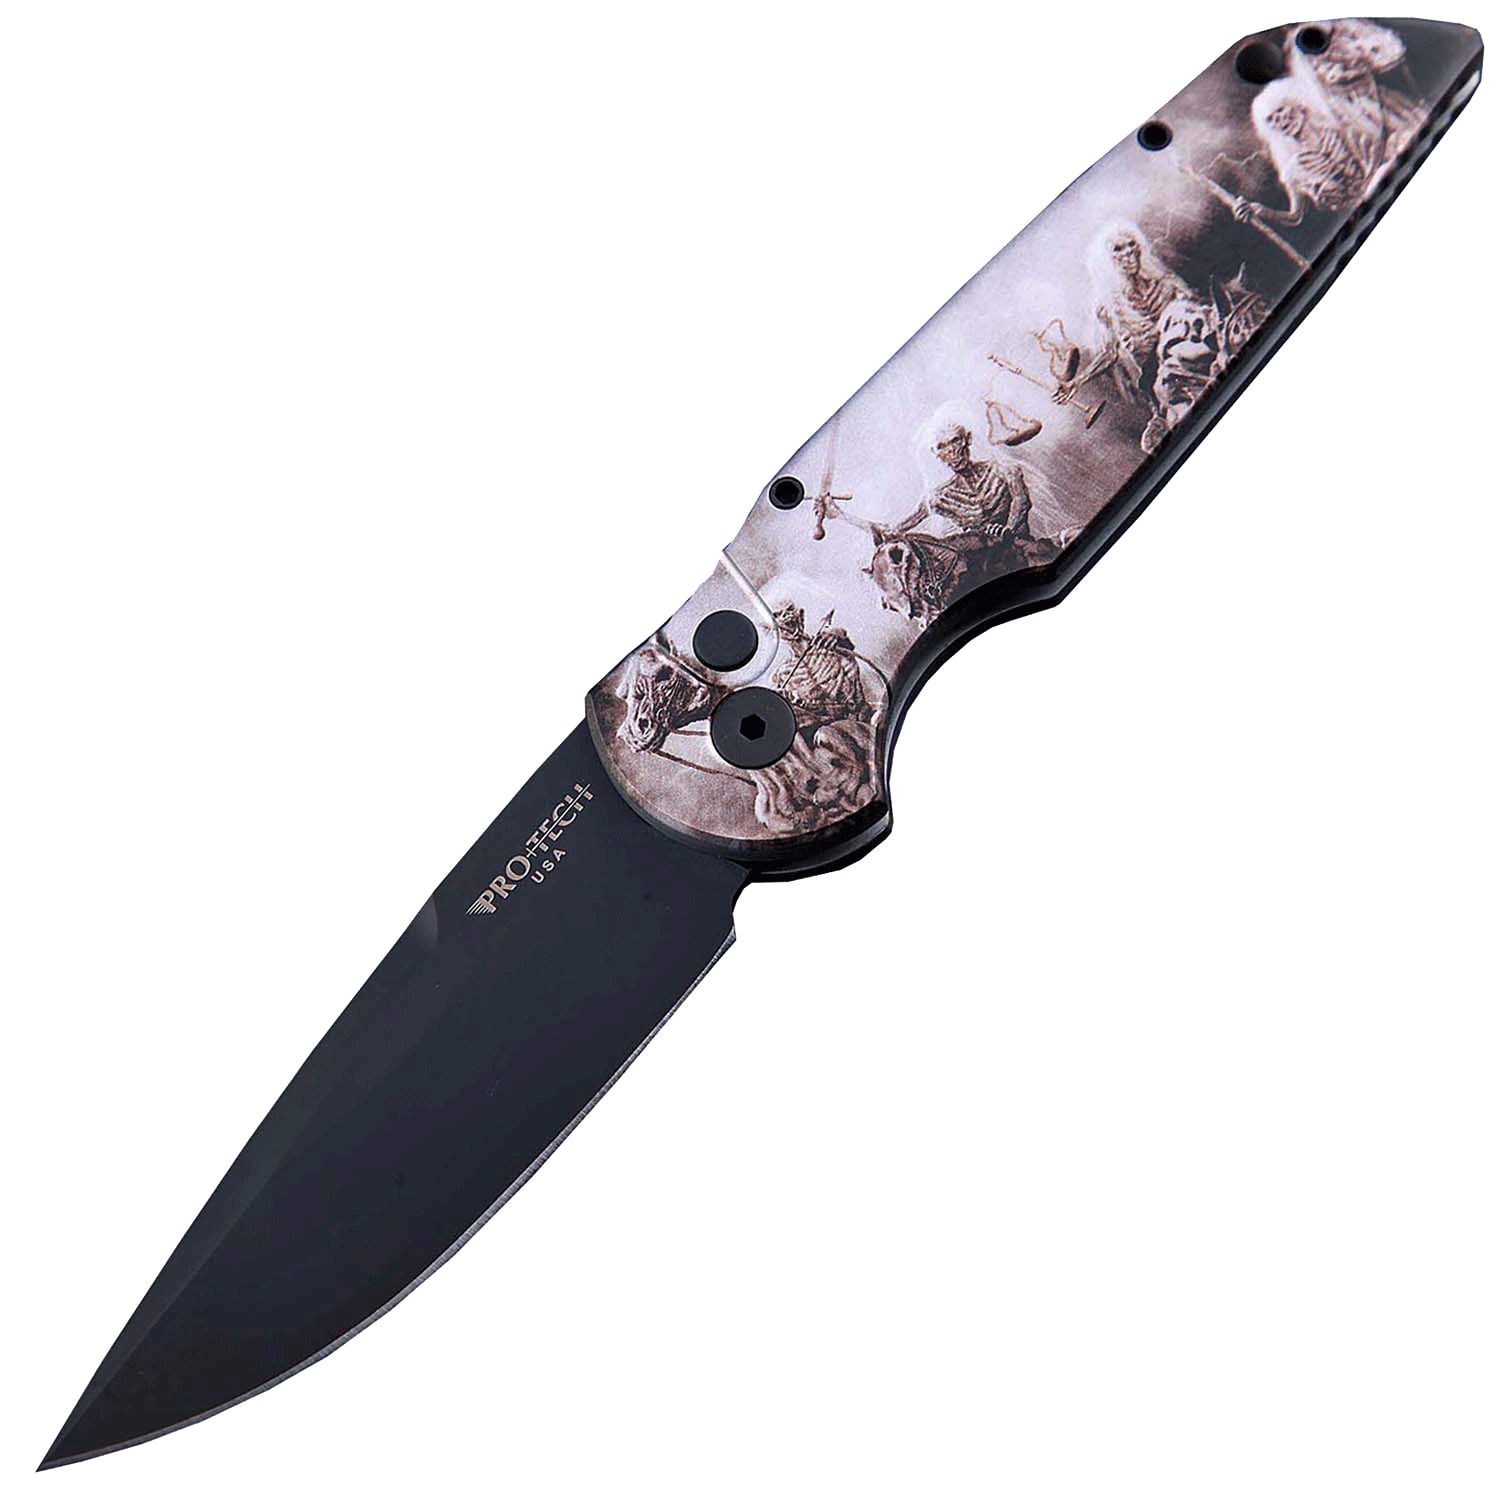 Автоматический складной нож Pro-Tech TR-3 Limited, клинок черный, сталь 154CM, рукоять алюминий, рисунок скелеты пиратов